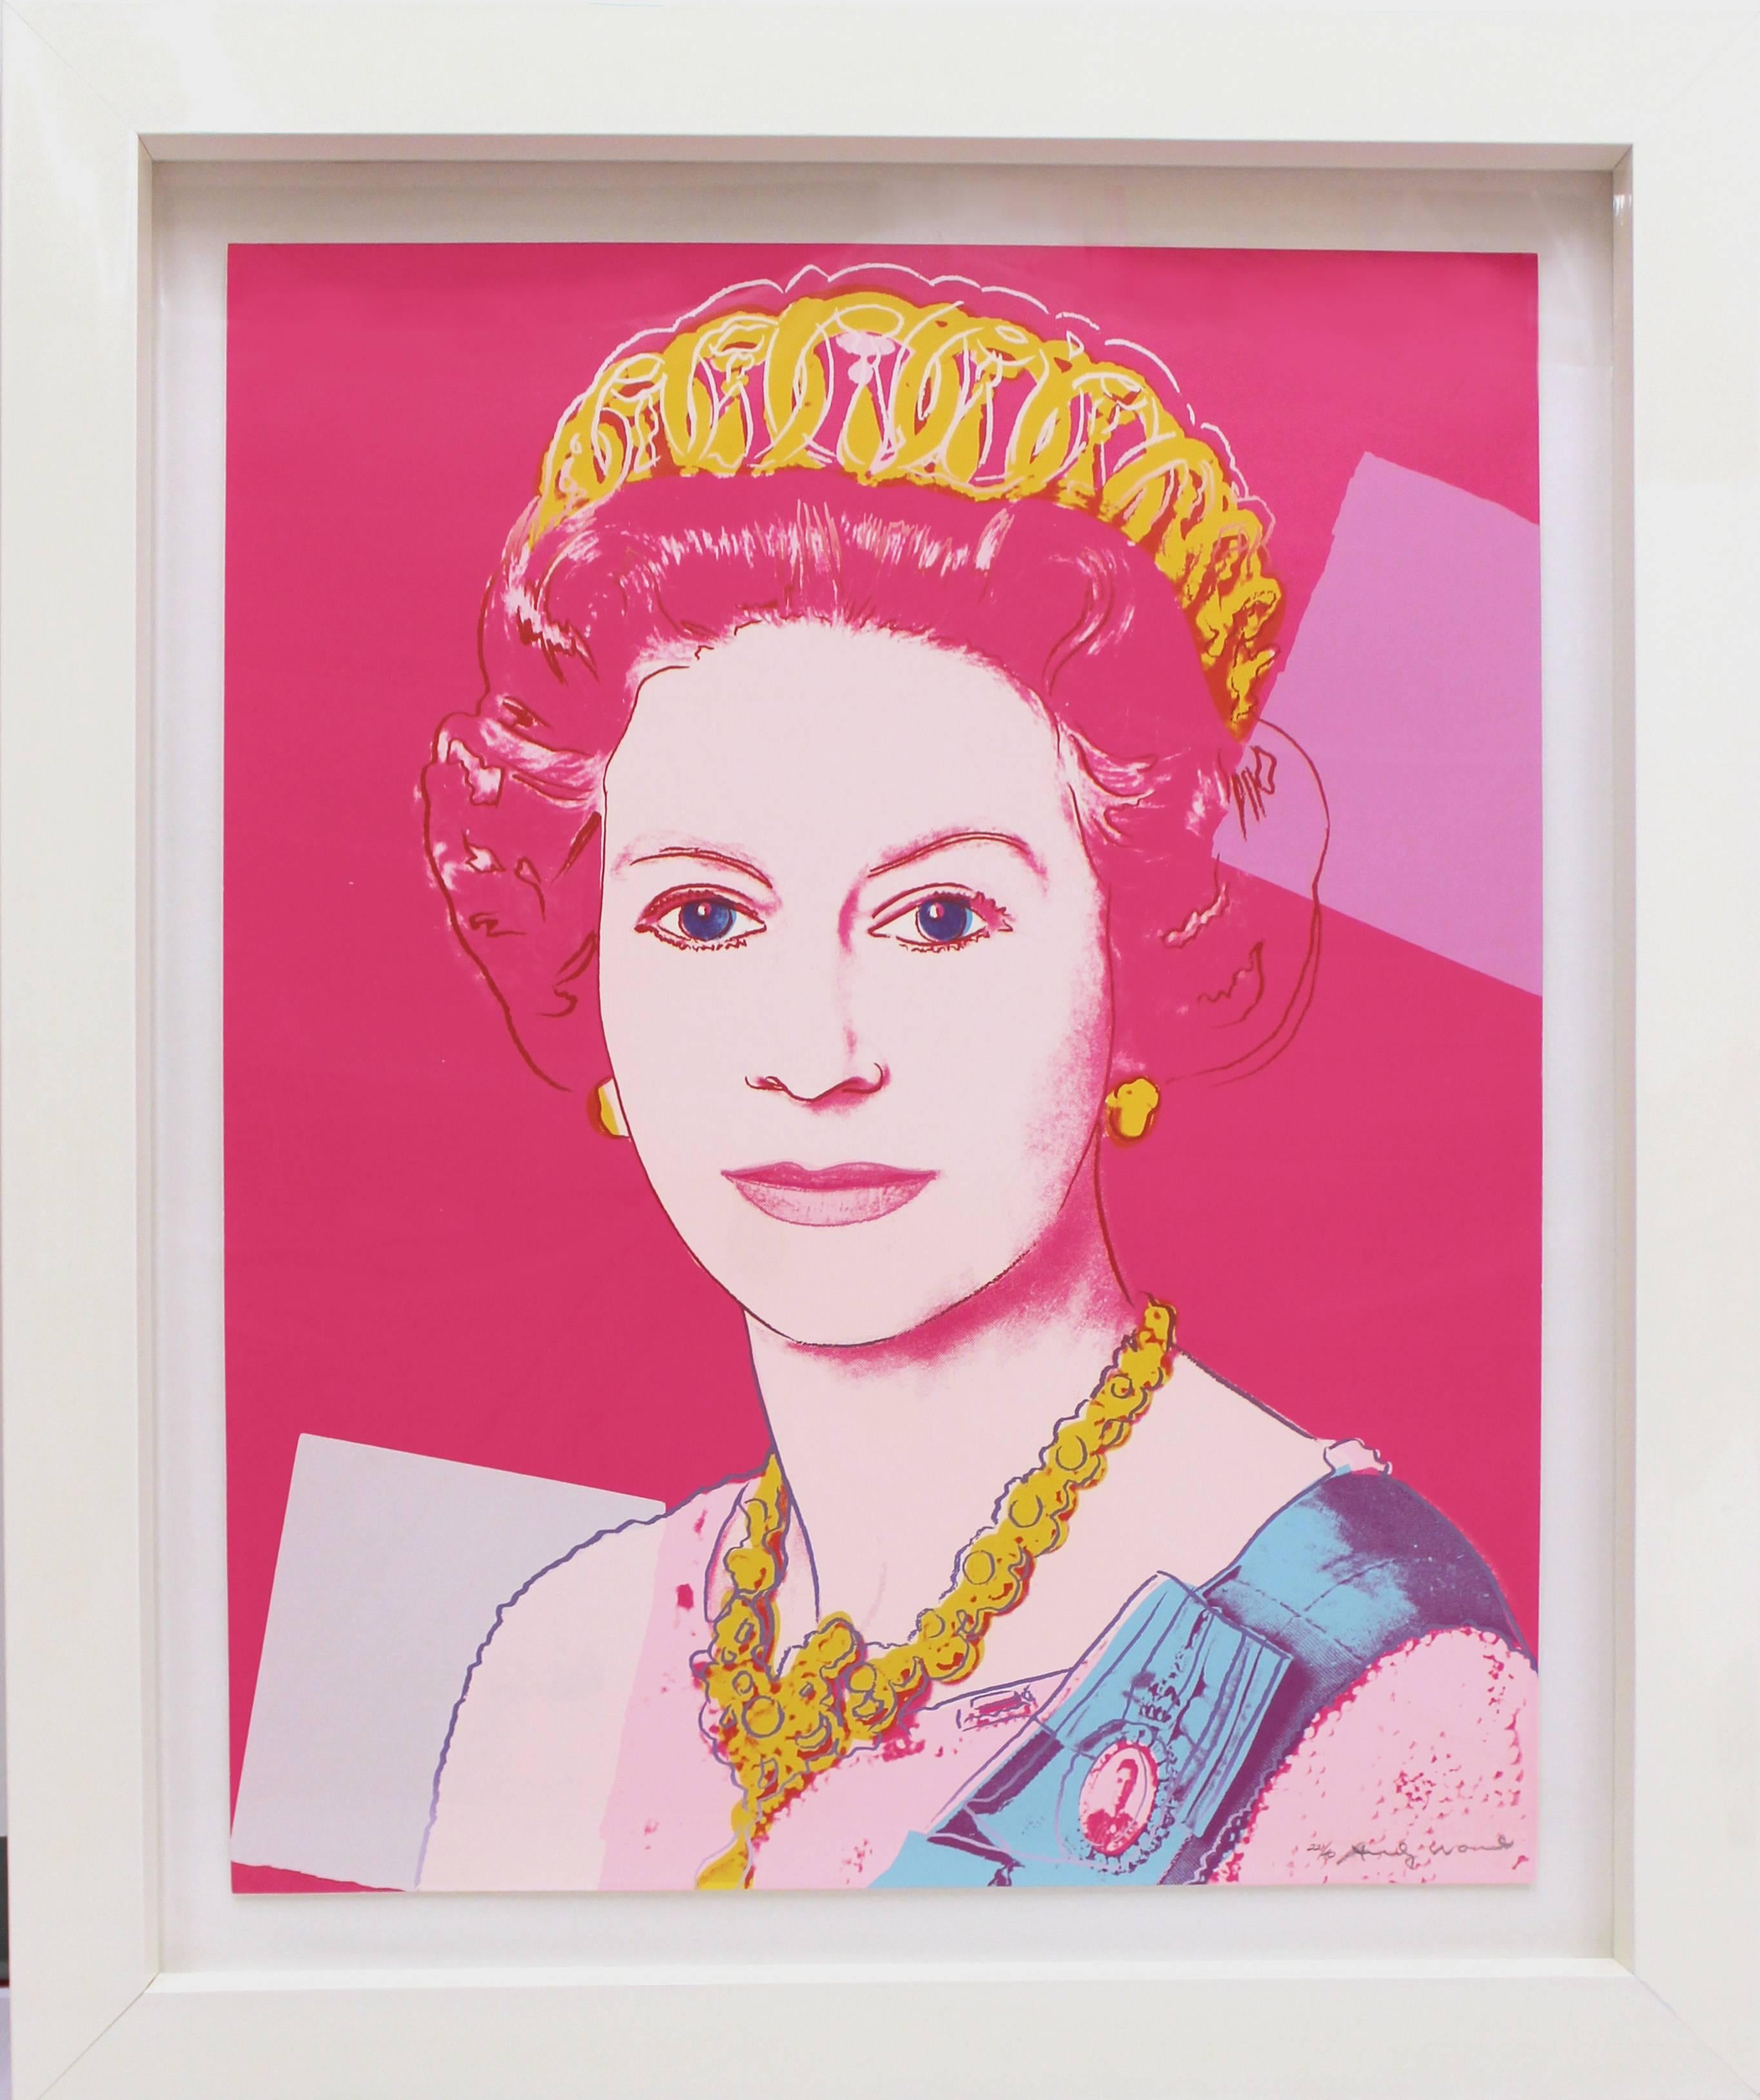 Queen Elizabeth II of the United Kingdom 336 - Print by Andy Warhol